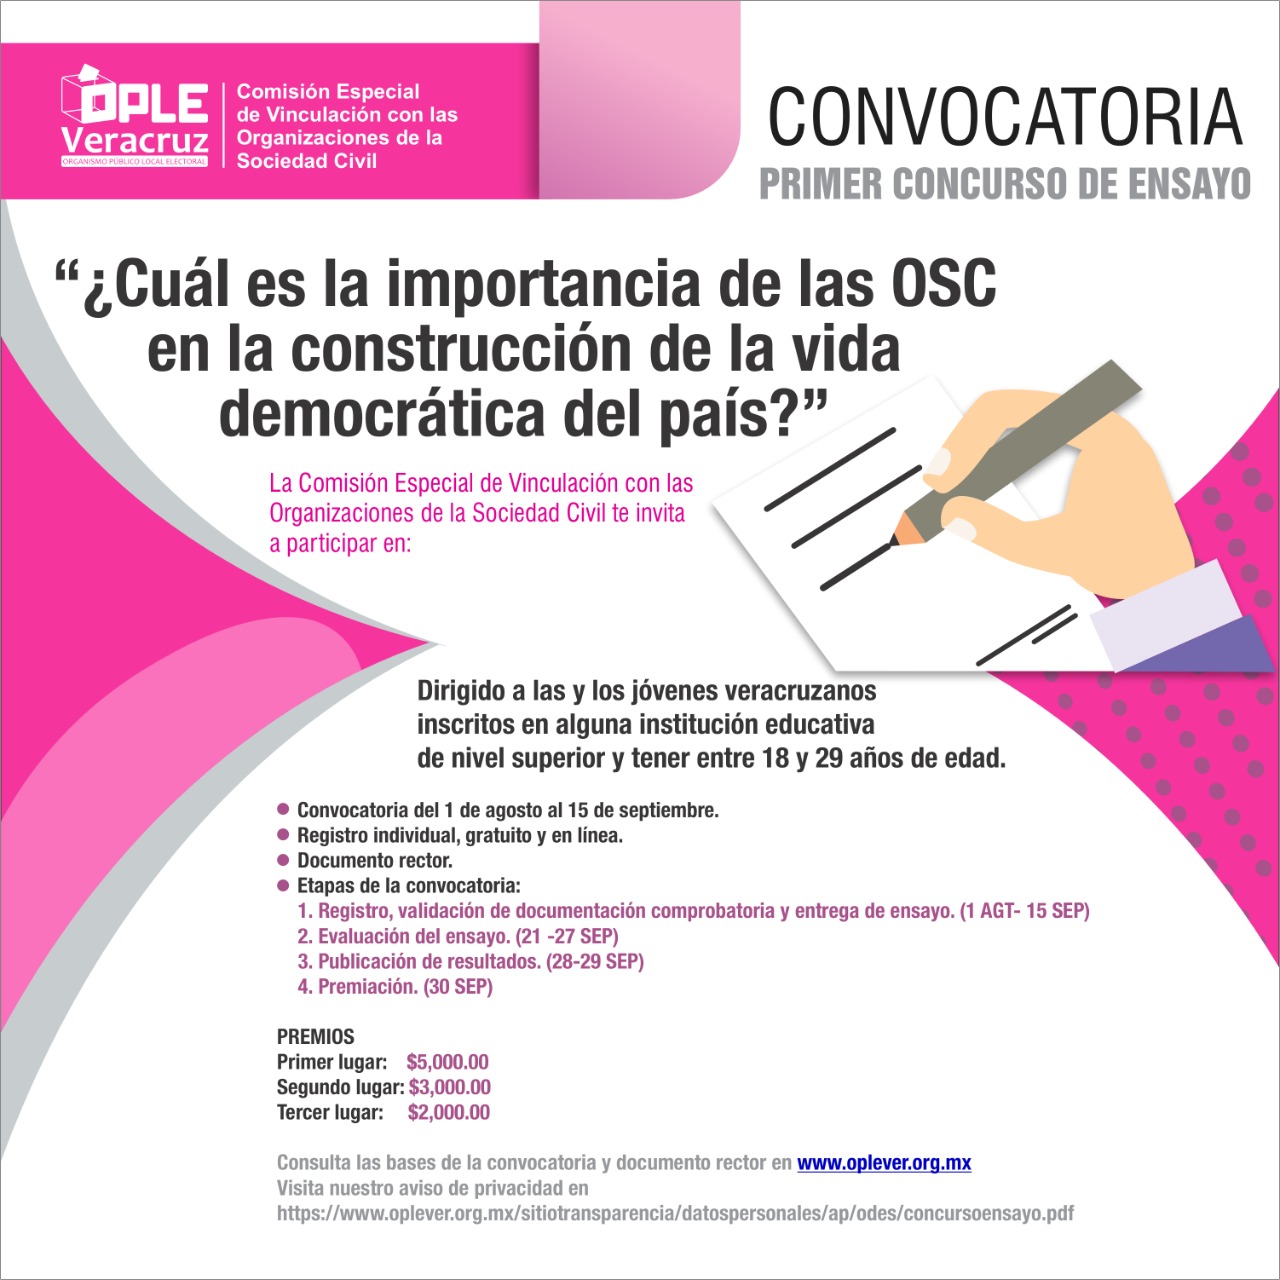 Juventud Veracruzana de Educación Superior puede participar en el Concurso de Ensayo “¿Cuál es la importancia de las OSC en la construcción de la vida democrática del país?”: OPLE Veracruz